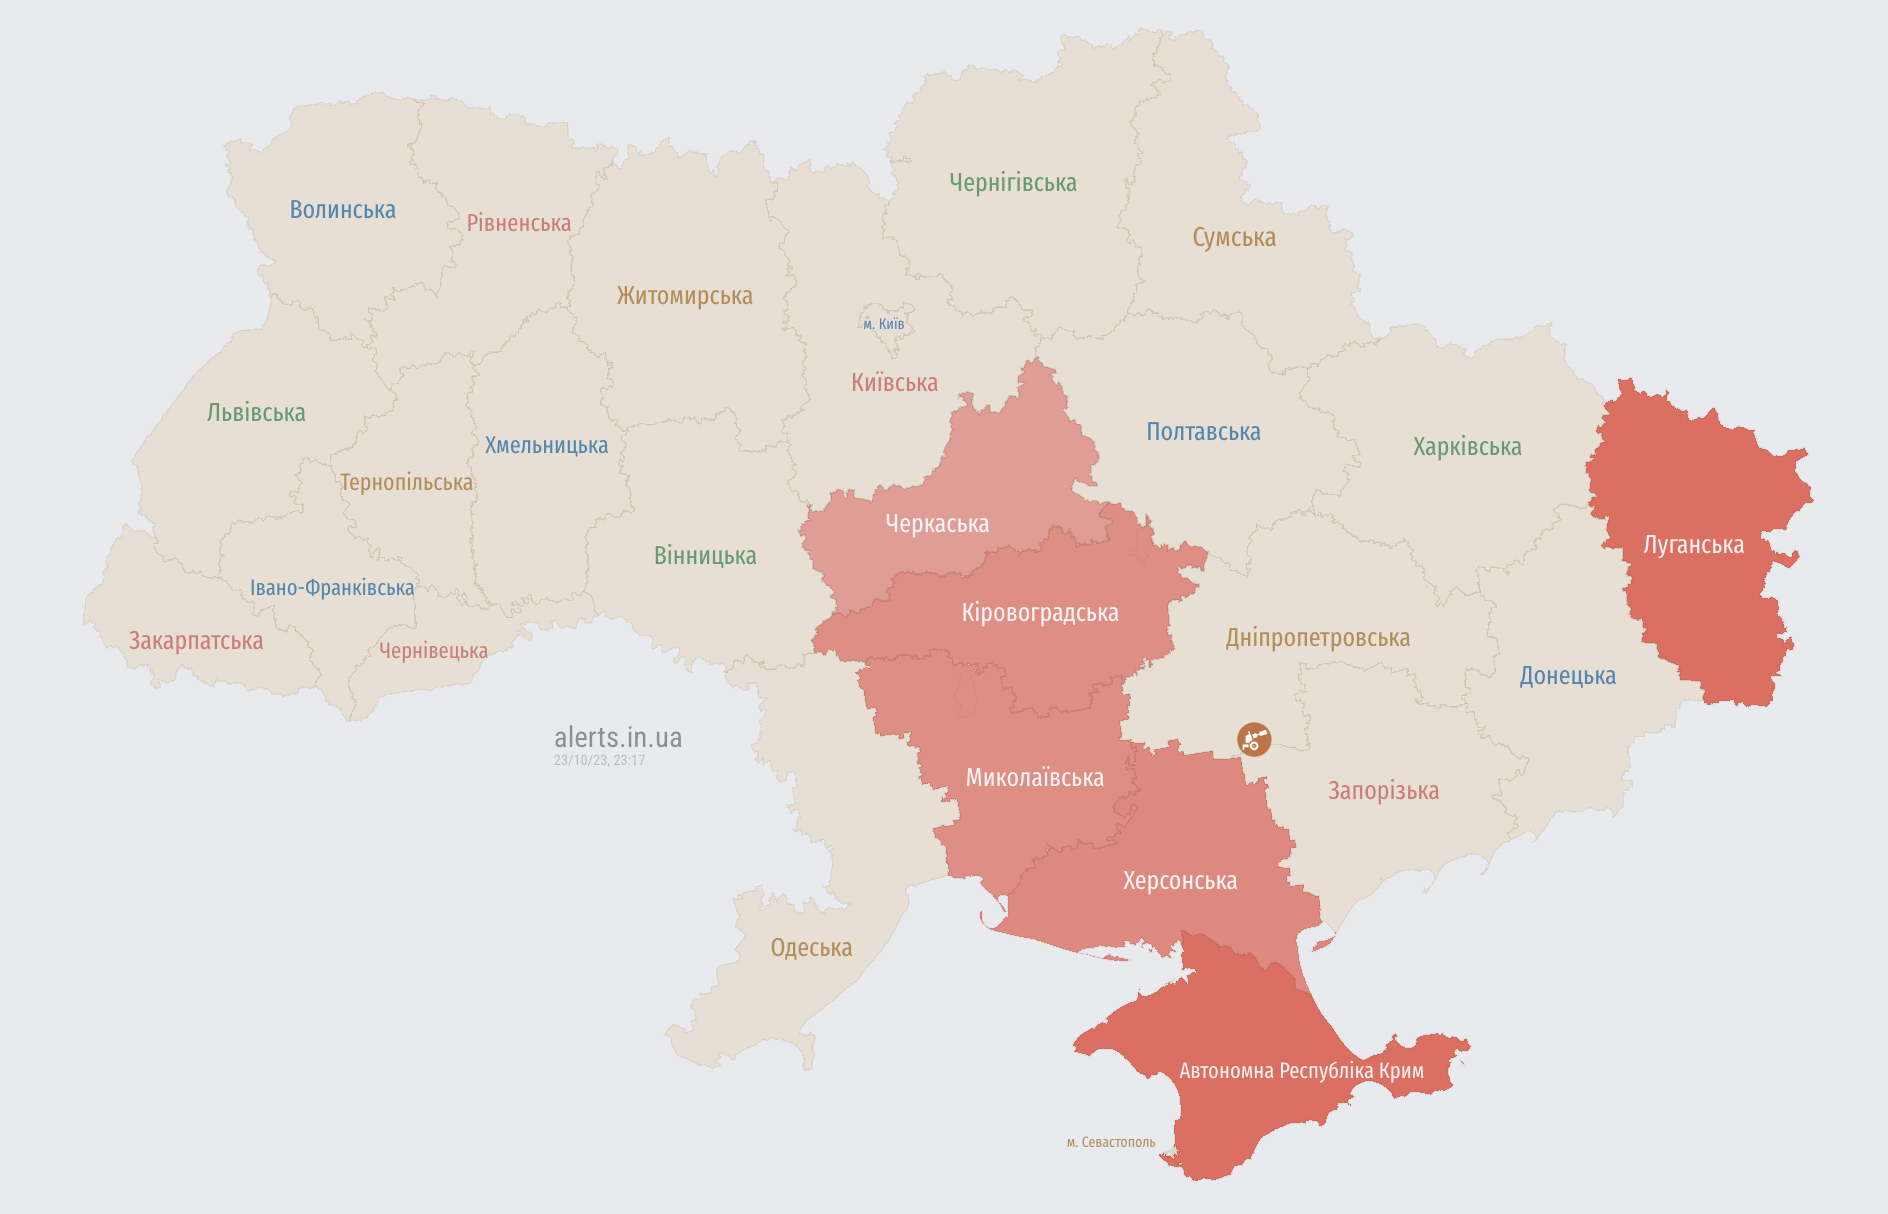 Повітряна тривога у низці областей України: де є загроза ударних БПЛА